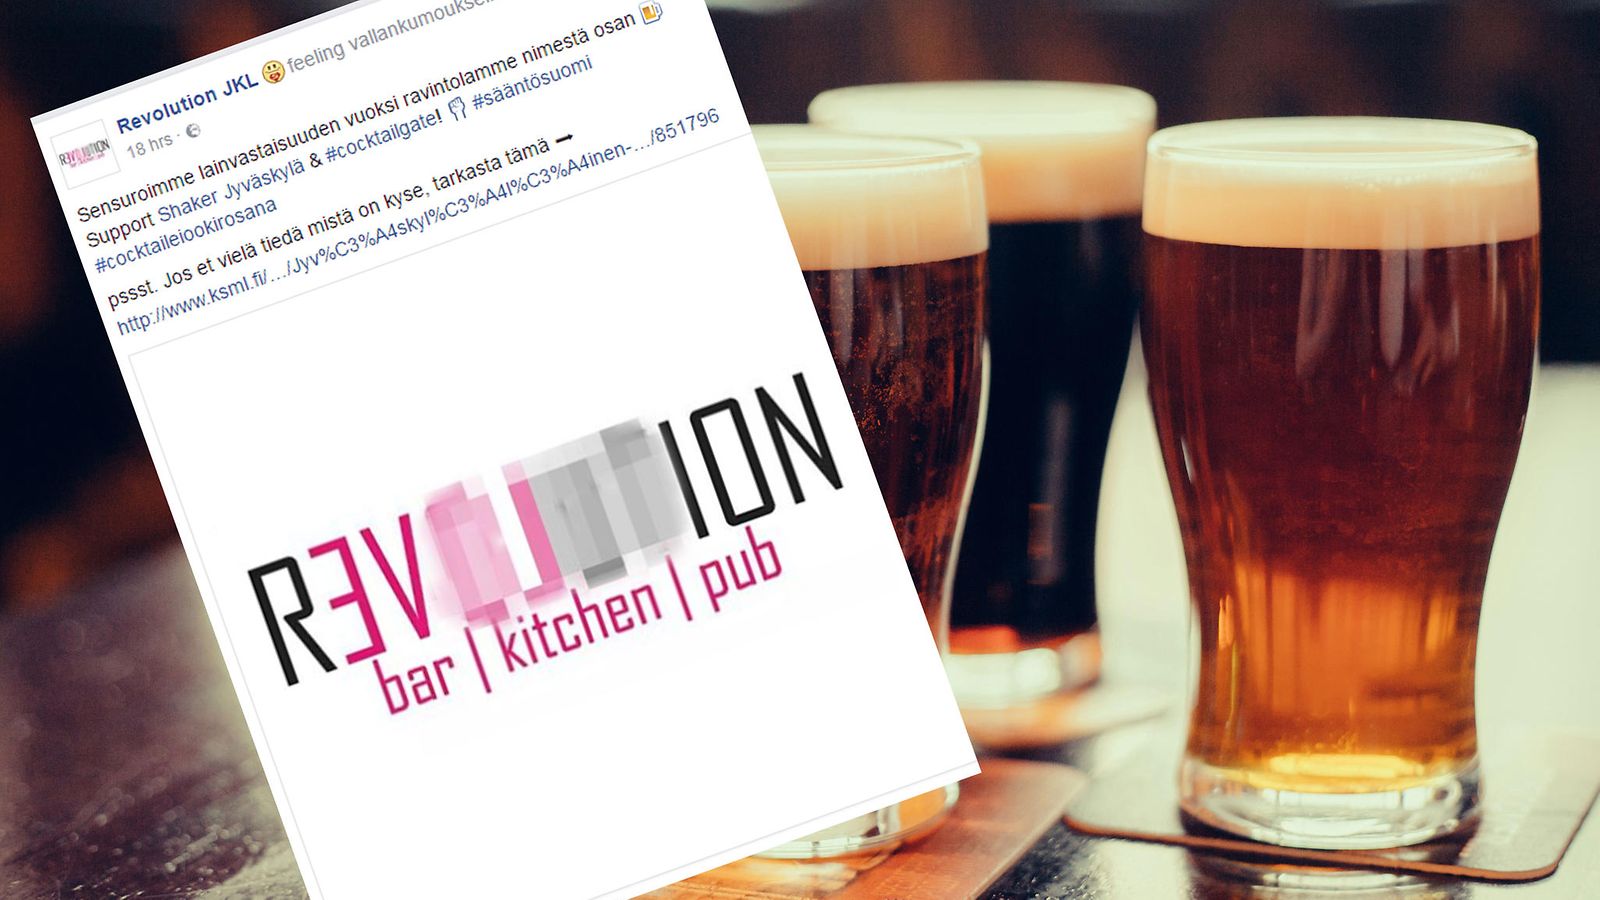 Revolution on ilmoittanut sensuroivansa nimestään sanan "olut". Kuva on ruutukaappaus ravintolan Facebook-sivuilta.